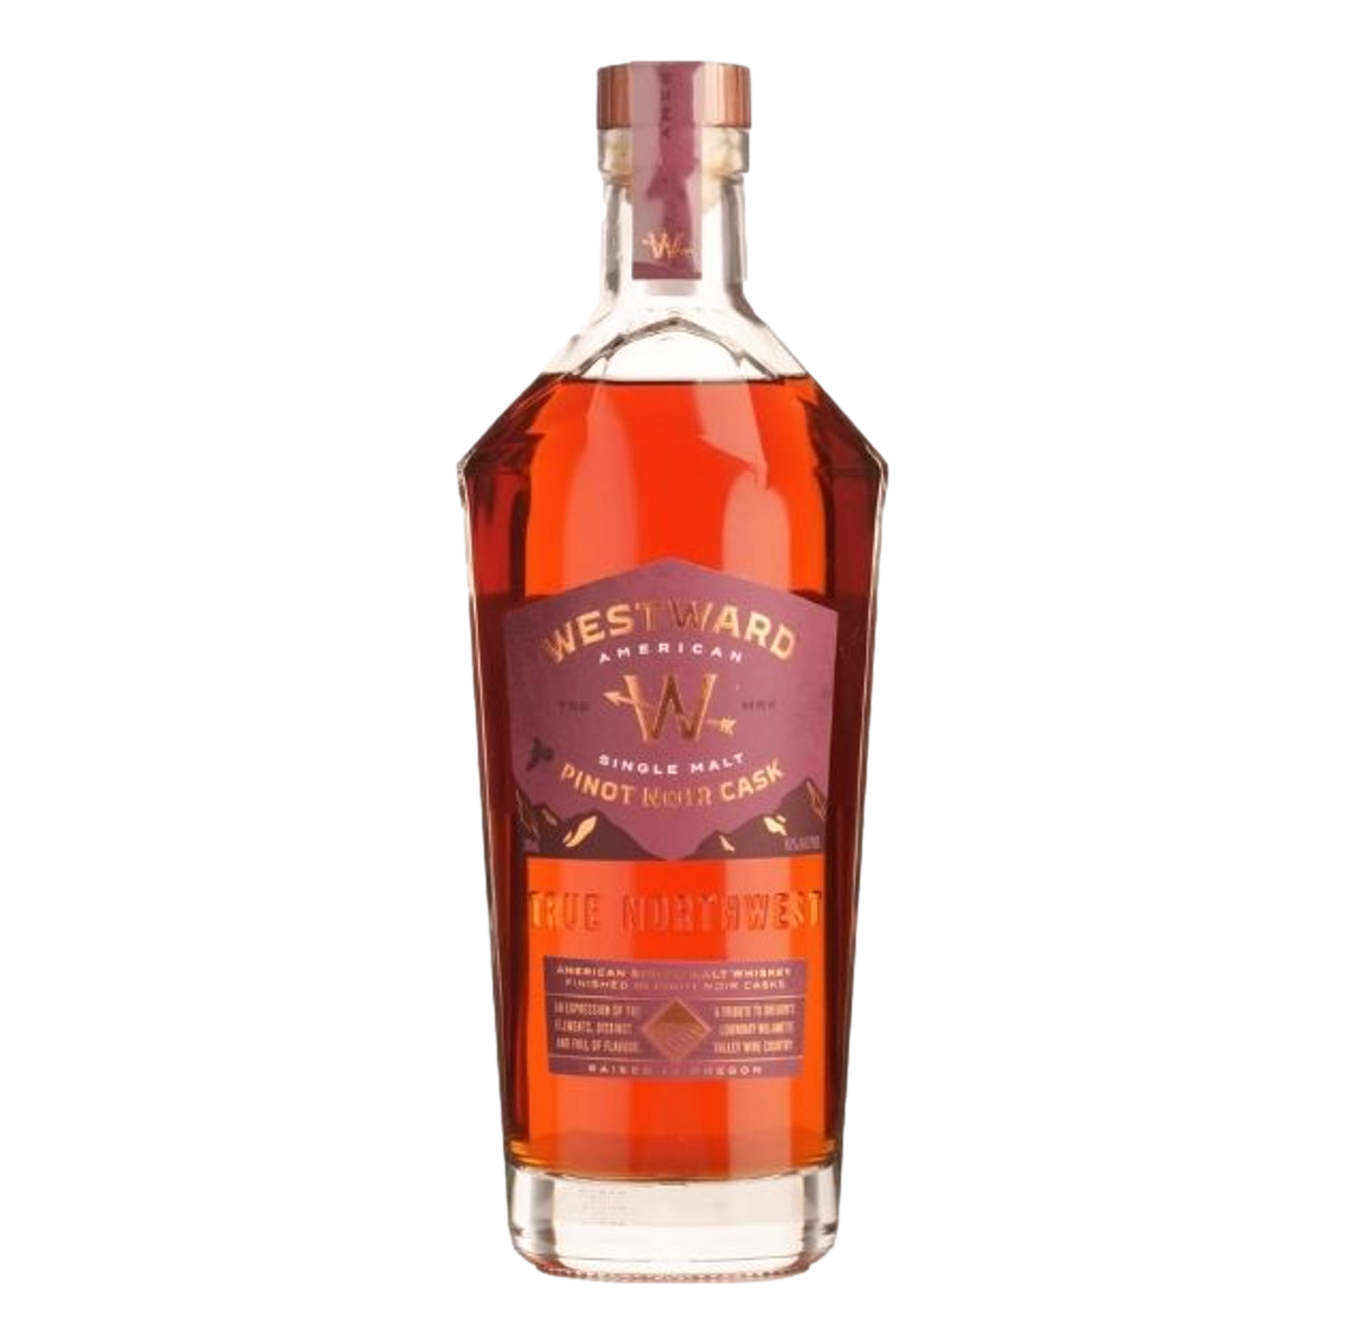 Westward Pinot Noir Cask American Single Malt Whiskey 700ml